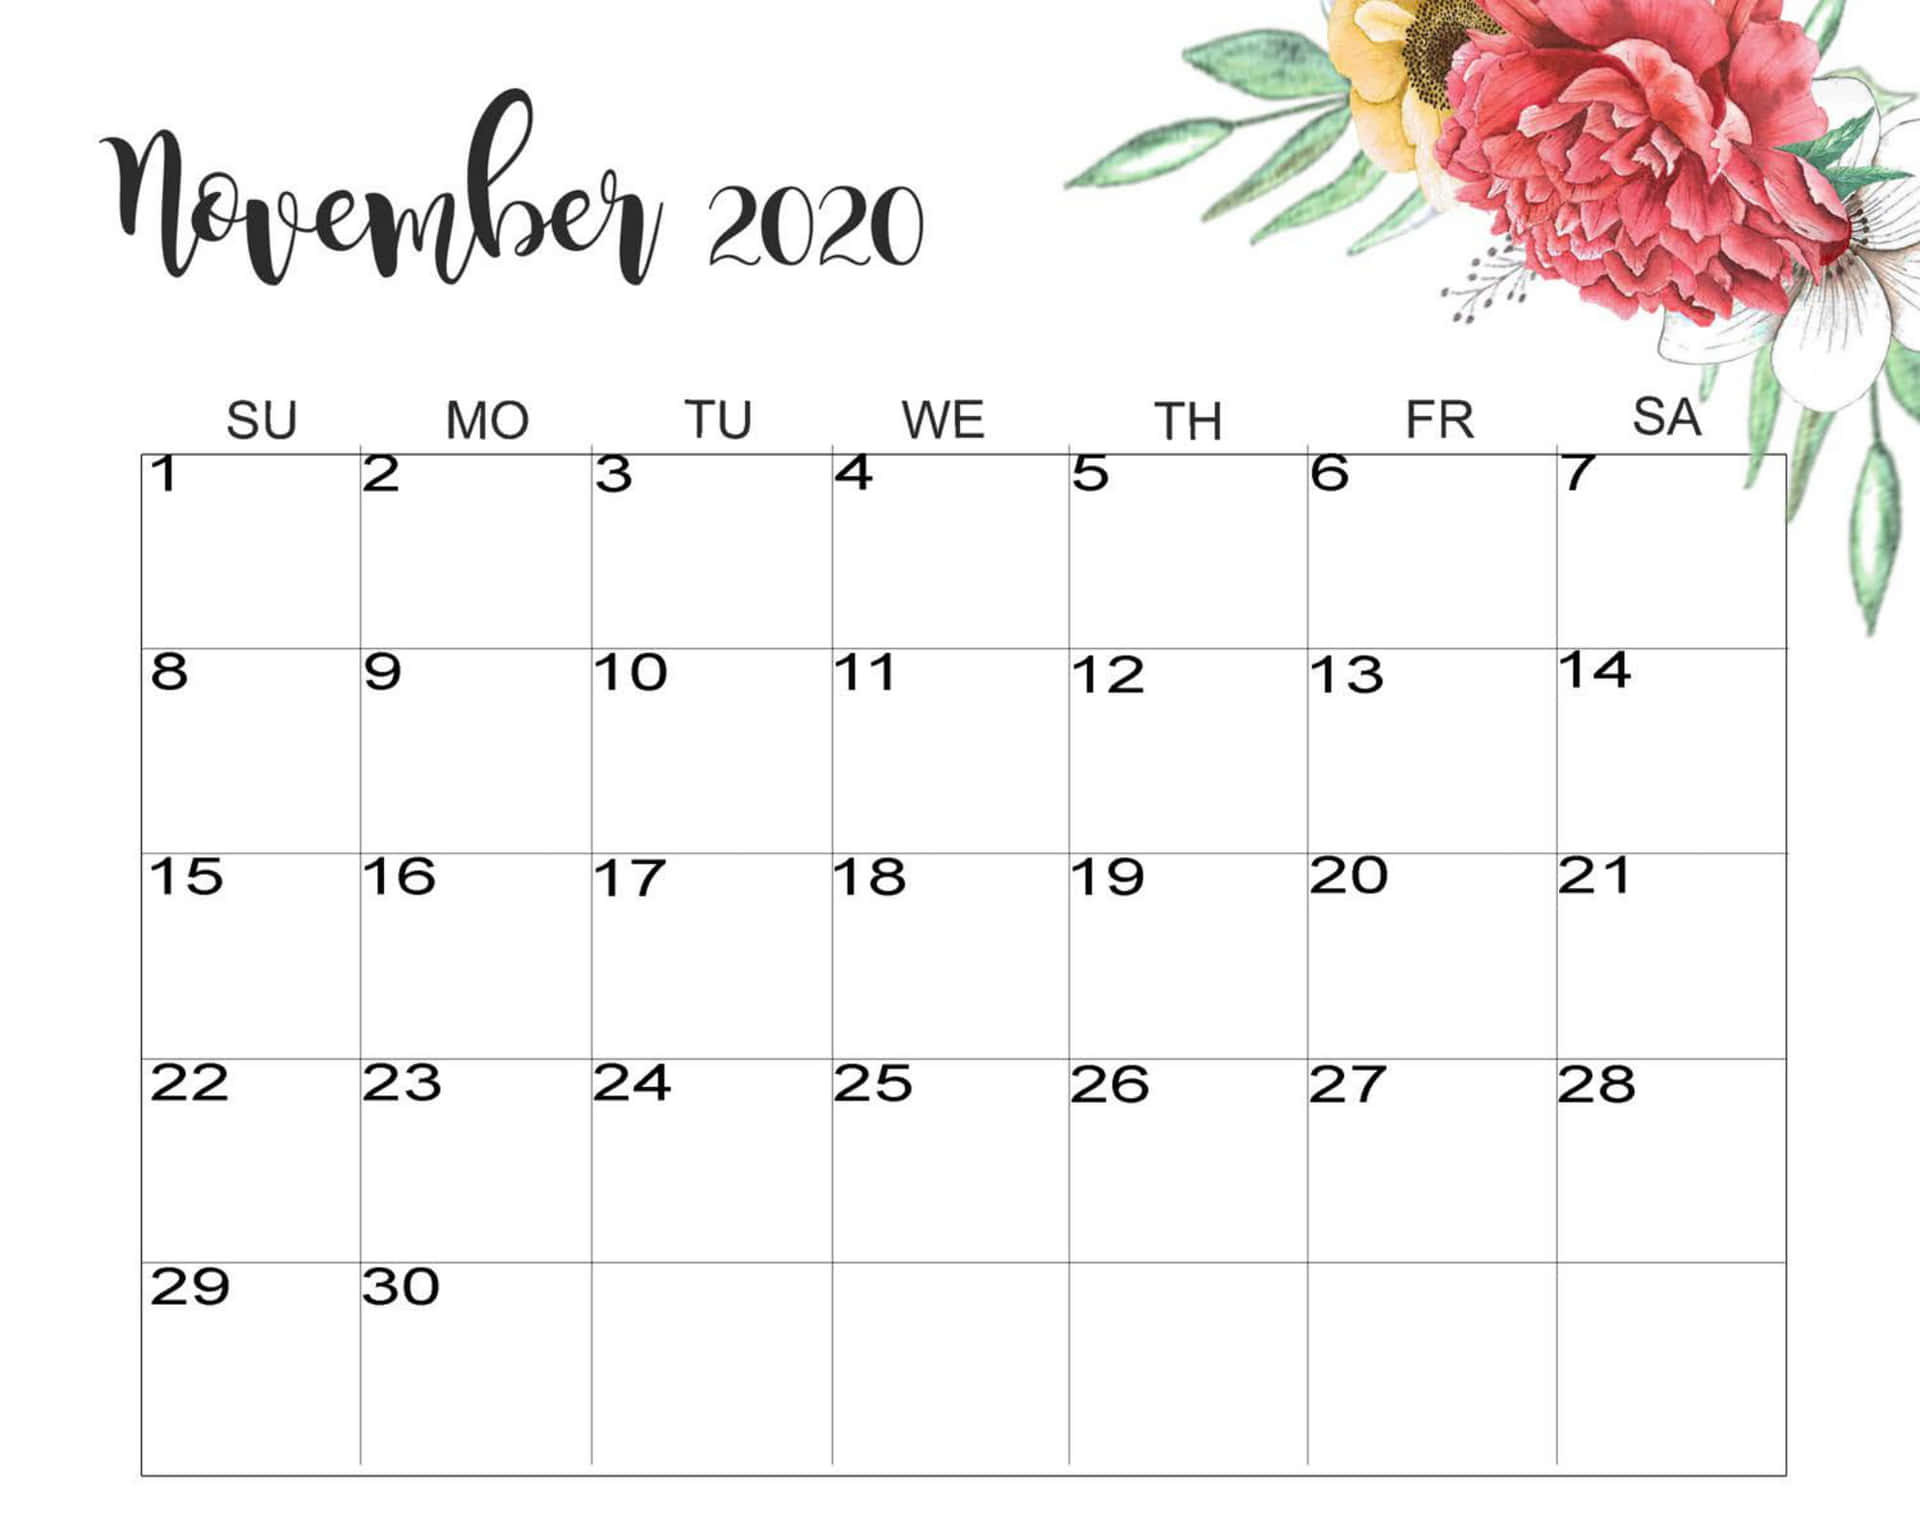 November 2020 Kalender Wallpaper